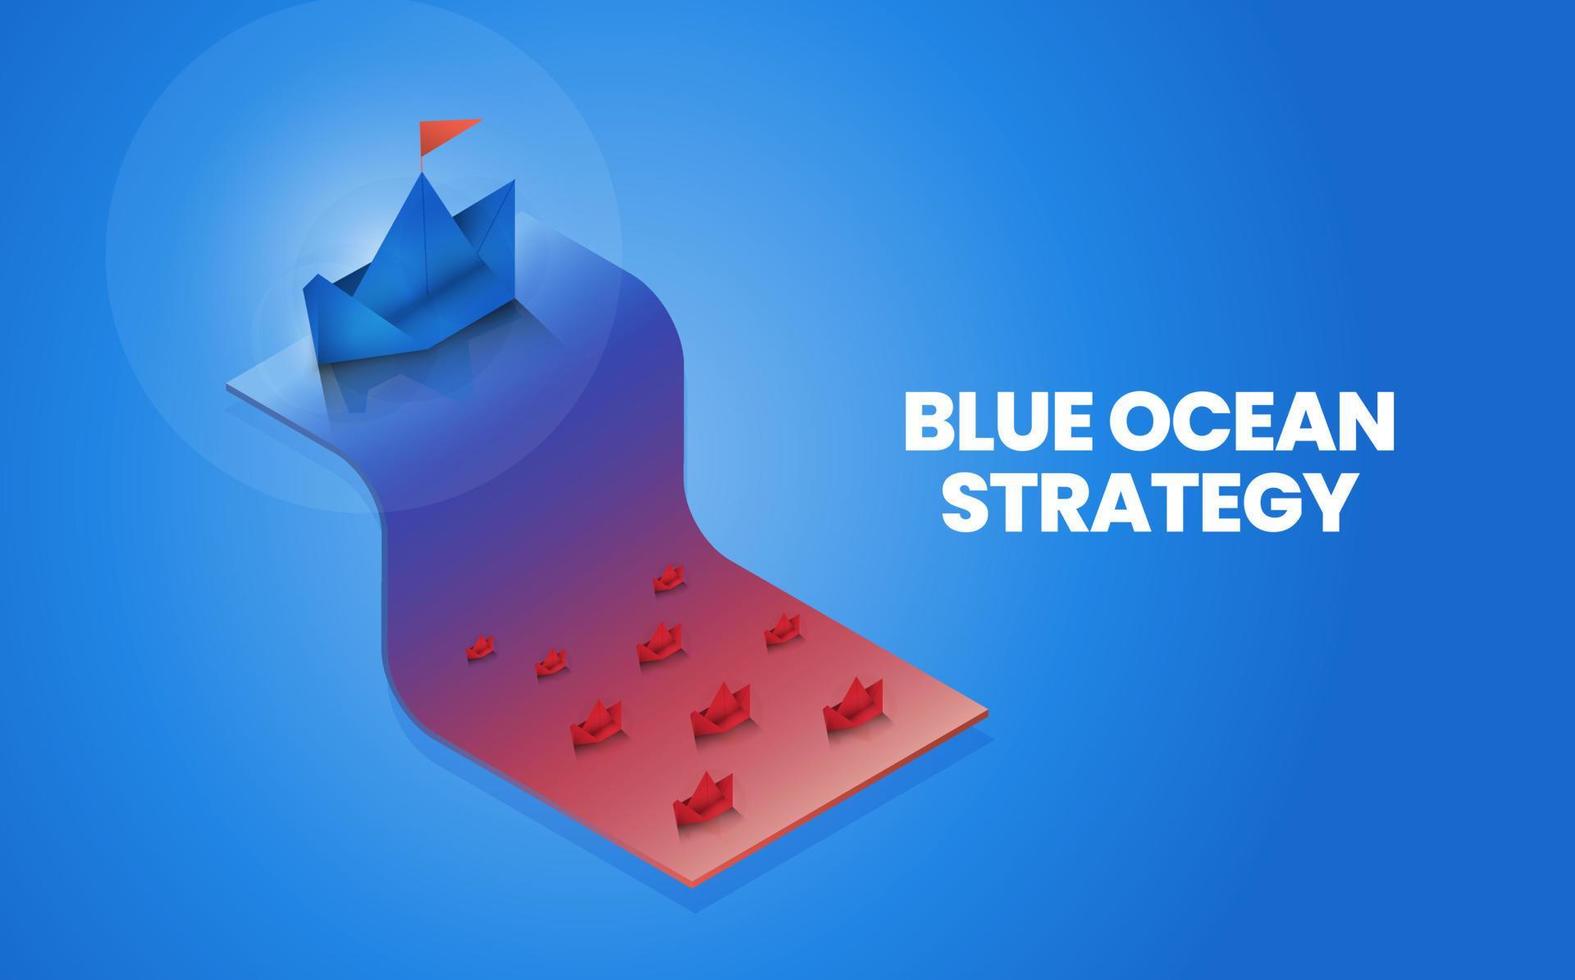 isometrische blauwe oceaanstrategie is vergelijking 2 markt, rode oceaan en blauwe oceaanmarkt en klant voor marketinganalyse en plan.de origamipresentatie metafoor pioniersmarkt heeft geen concurrentie vector